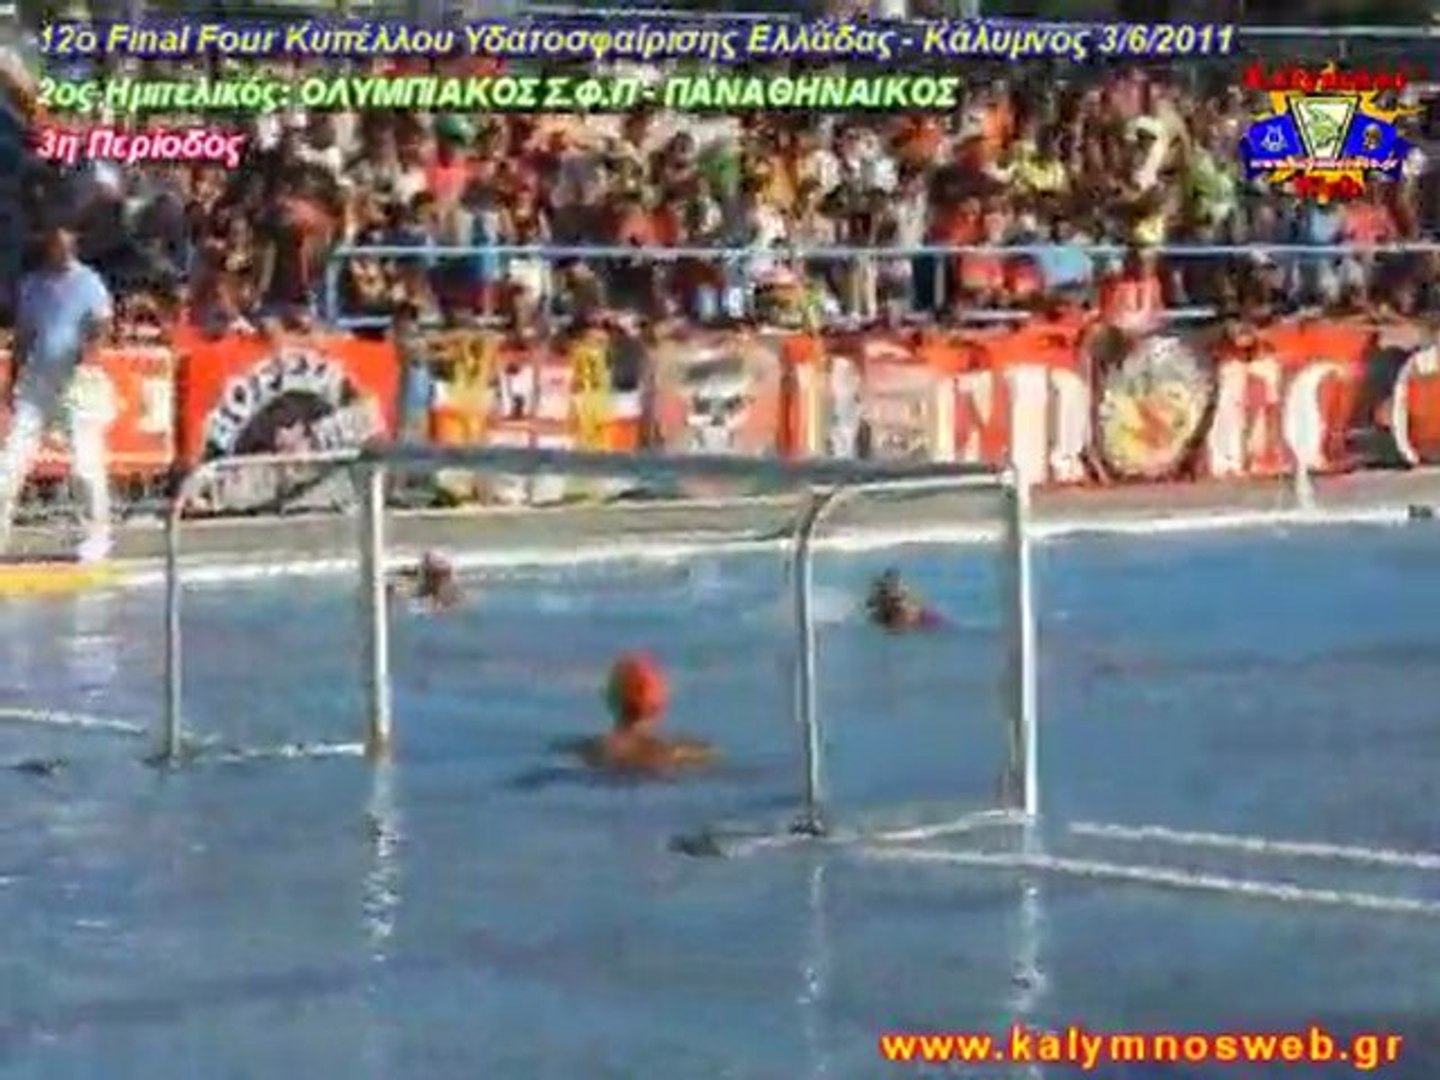 Κύπελλο Ελλάδας Water Polo, Final 4, Παναθηναικός - Ολυμπιακός, Περίοδος 3  - video Dailymotion